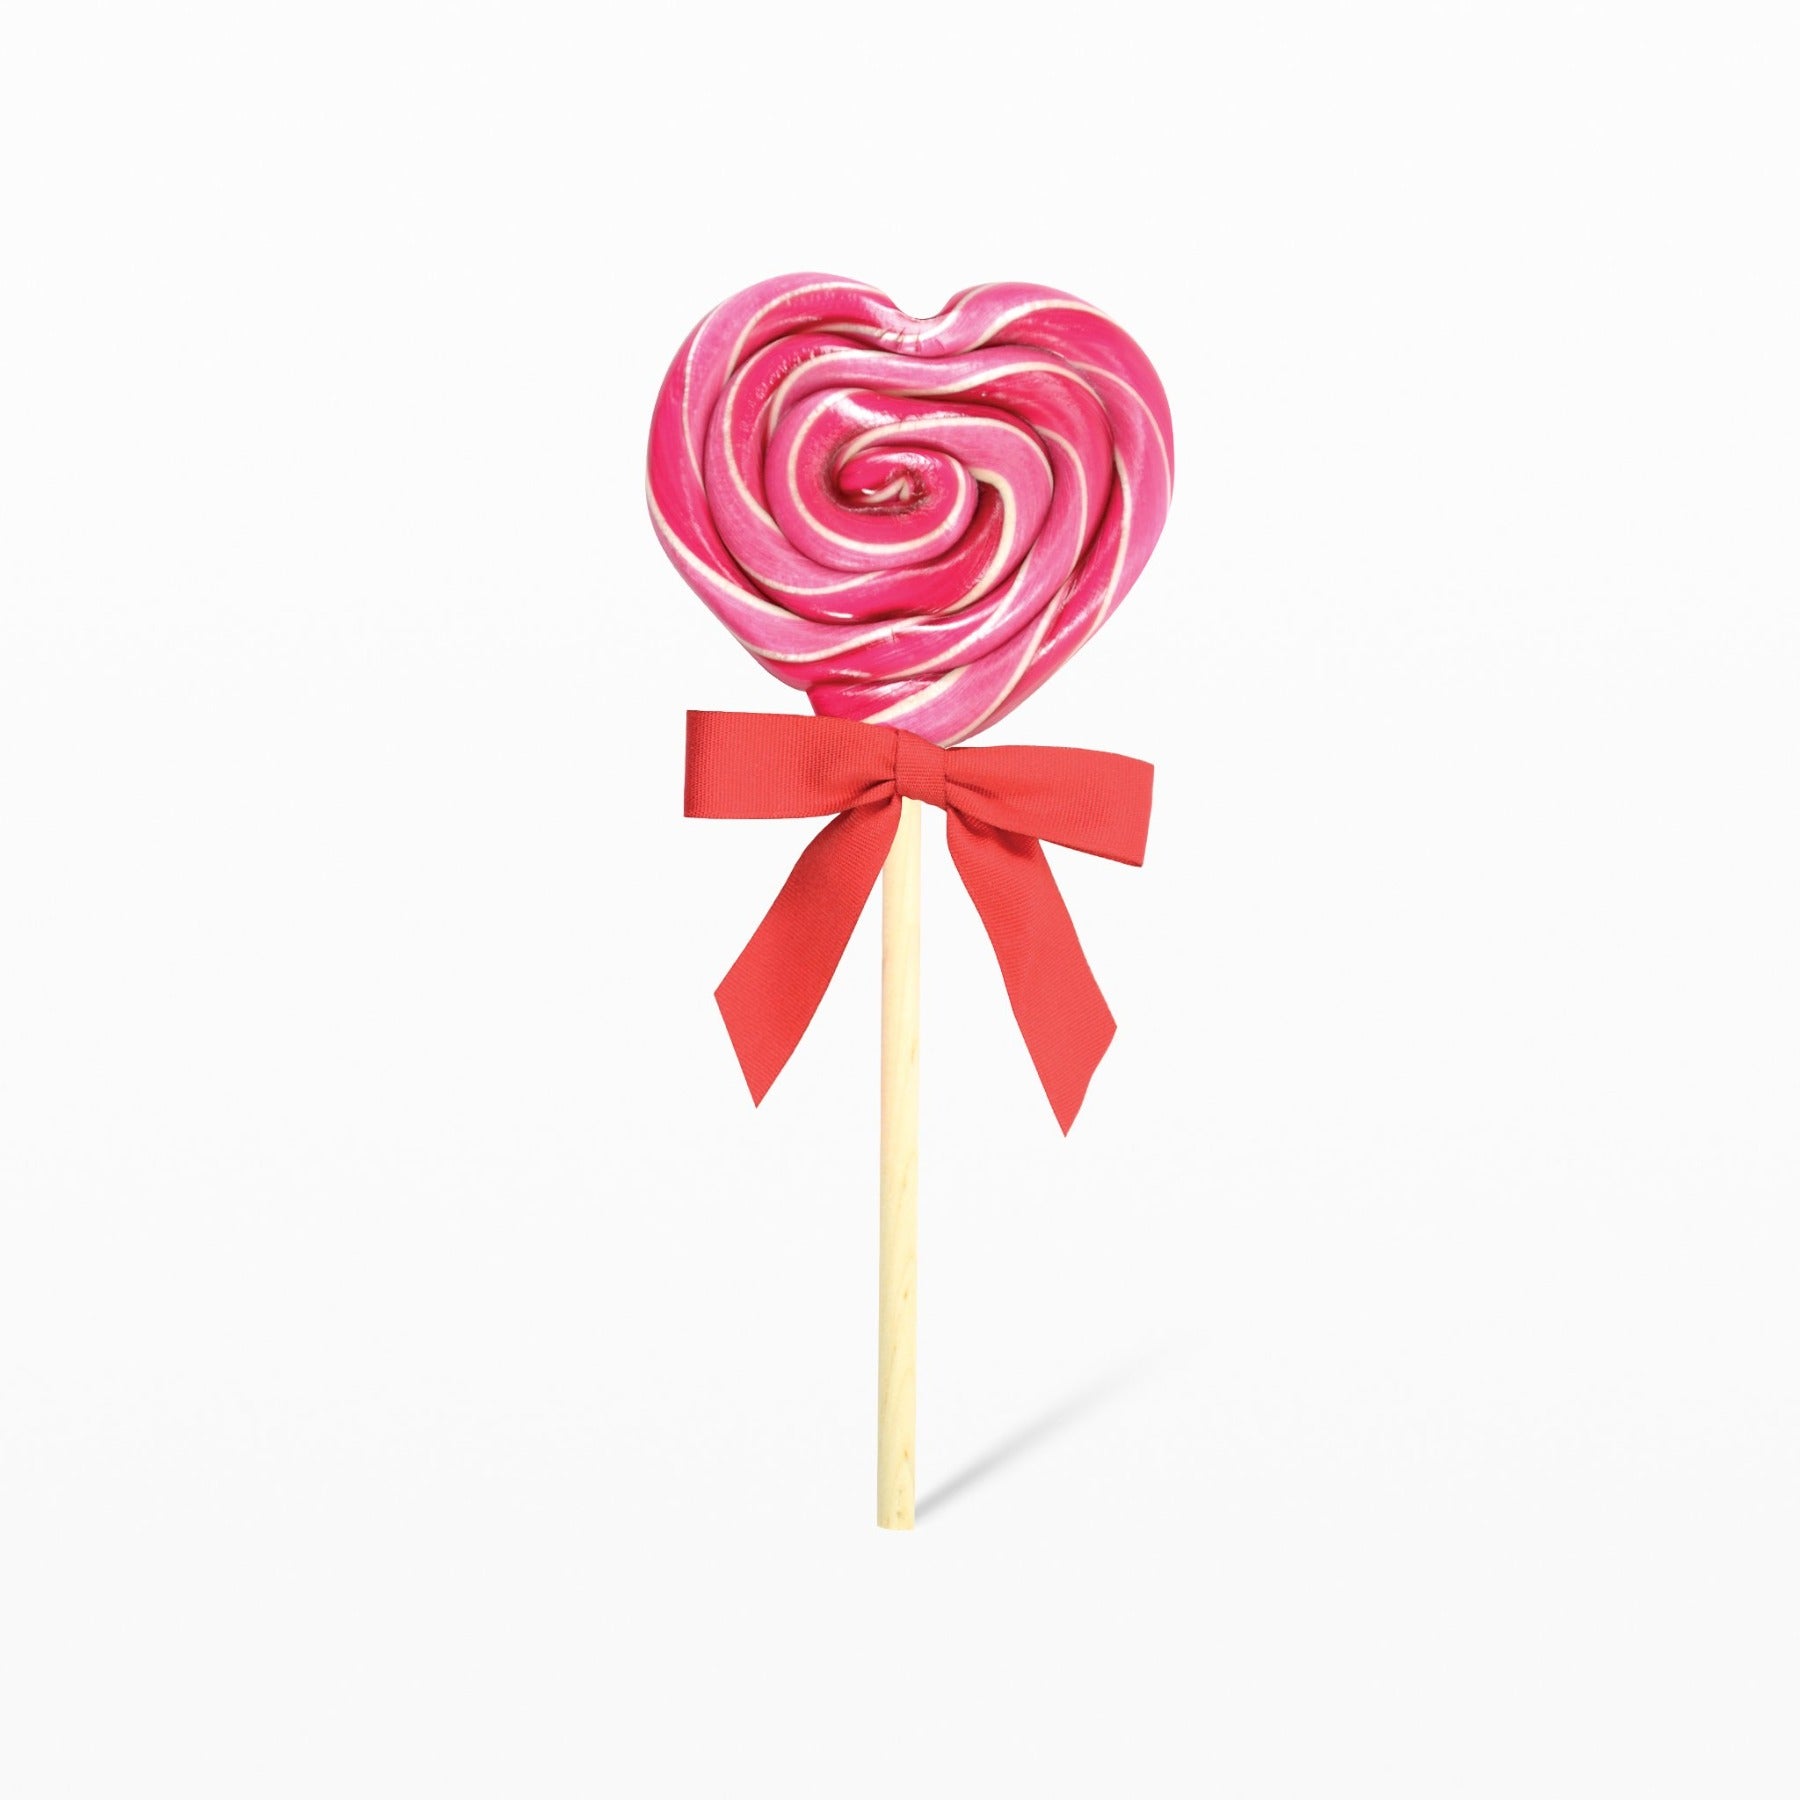 Candy - Heart lollipop - Valentine's Day, child's birthday